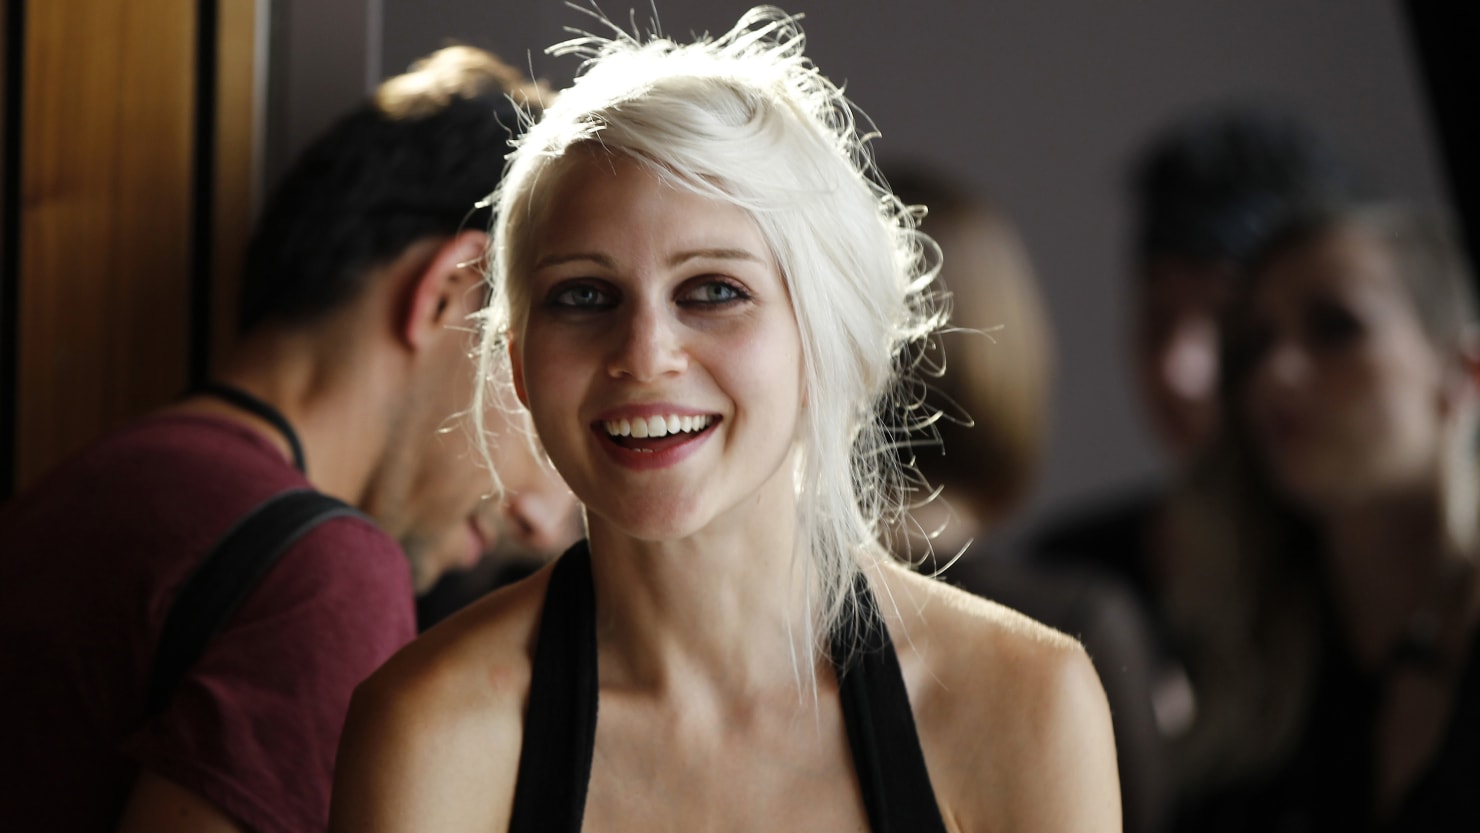 ‘Pretty’ NYC designer who dressed Lady Gaga fatally drugged, police say